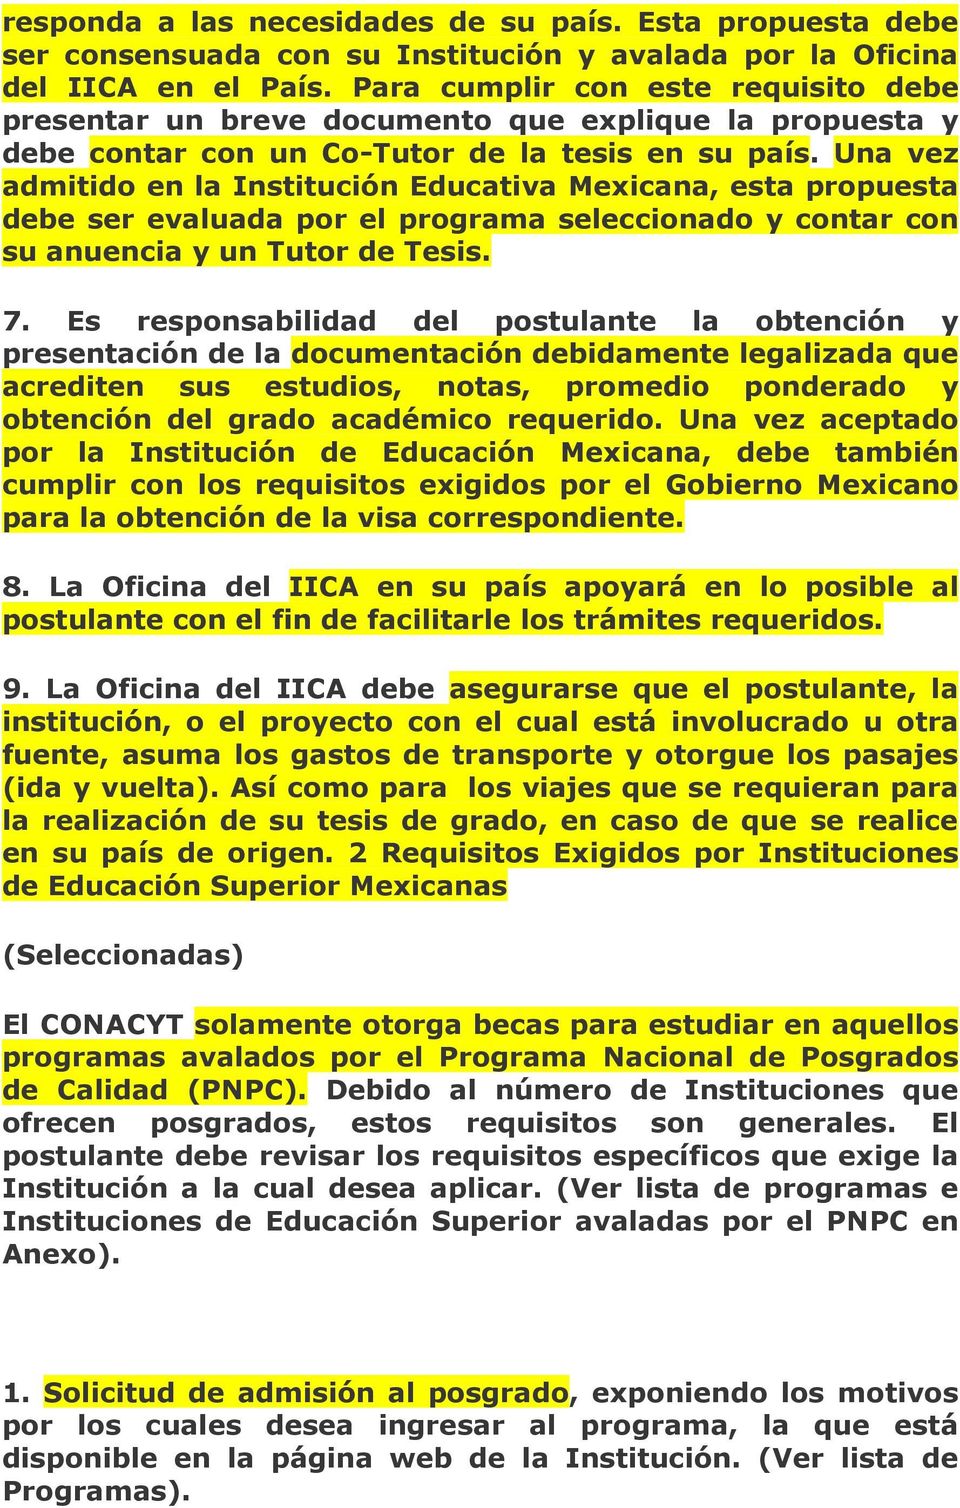 Una vez admitido en la Institución Educativa Mexicana, esta propuesta debe ser evaluada por el programa seleccionado y contar con su anuencia y un Tutor de Tesis. 7.